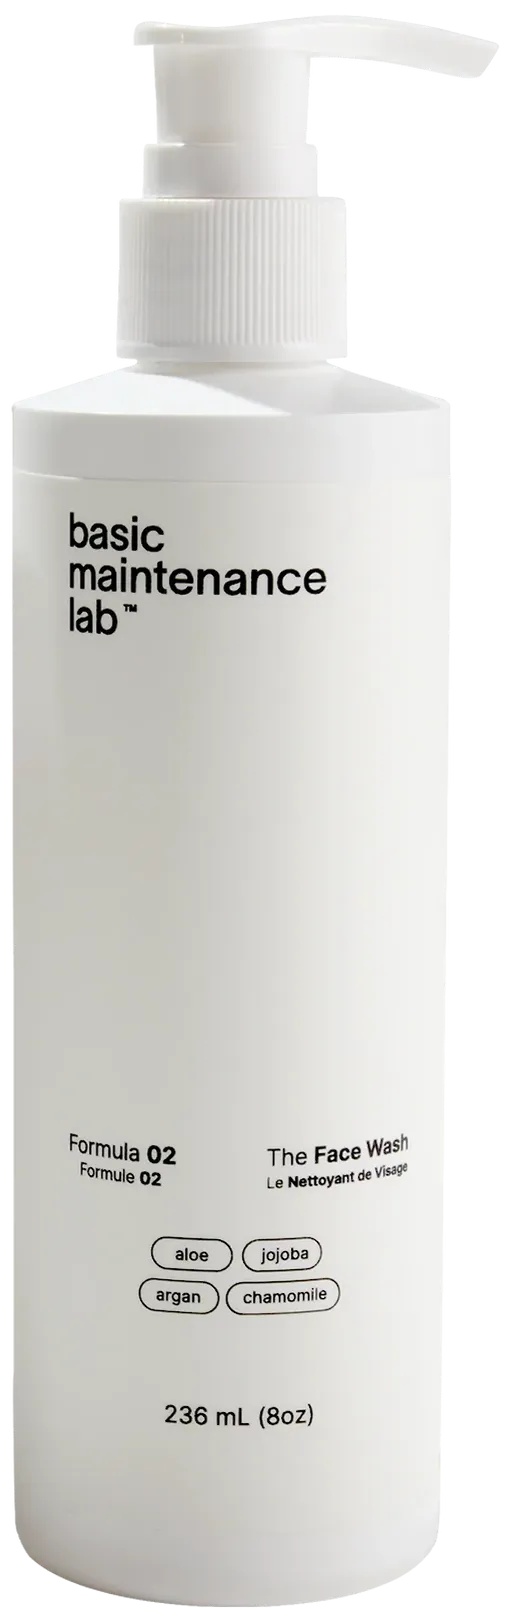 basic maintenance lab Formula 02 The Face Wash